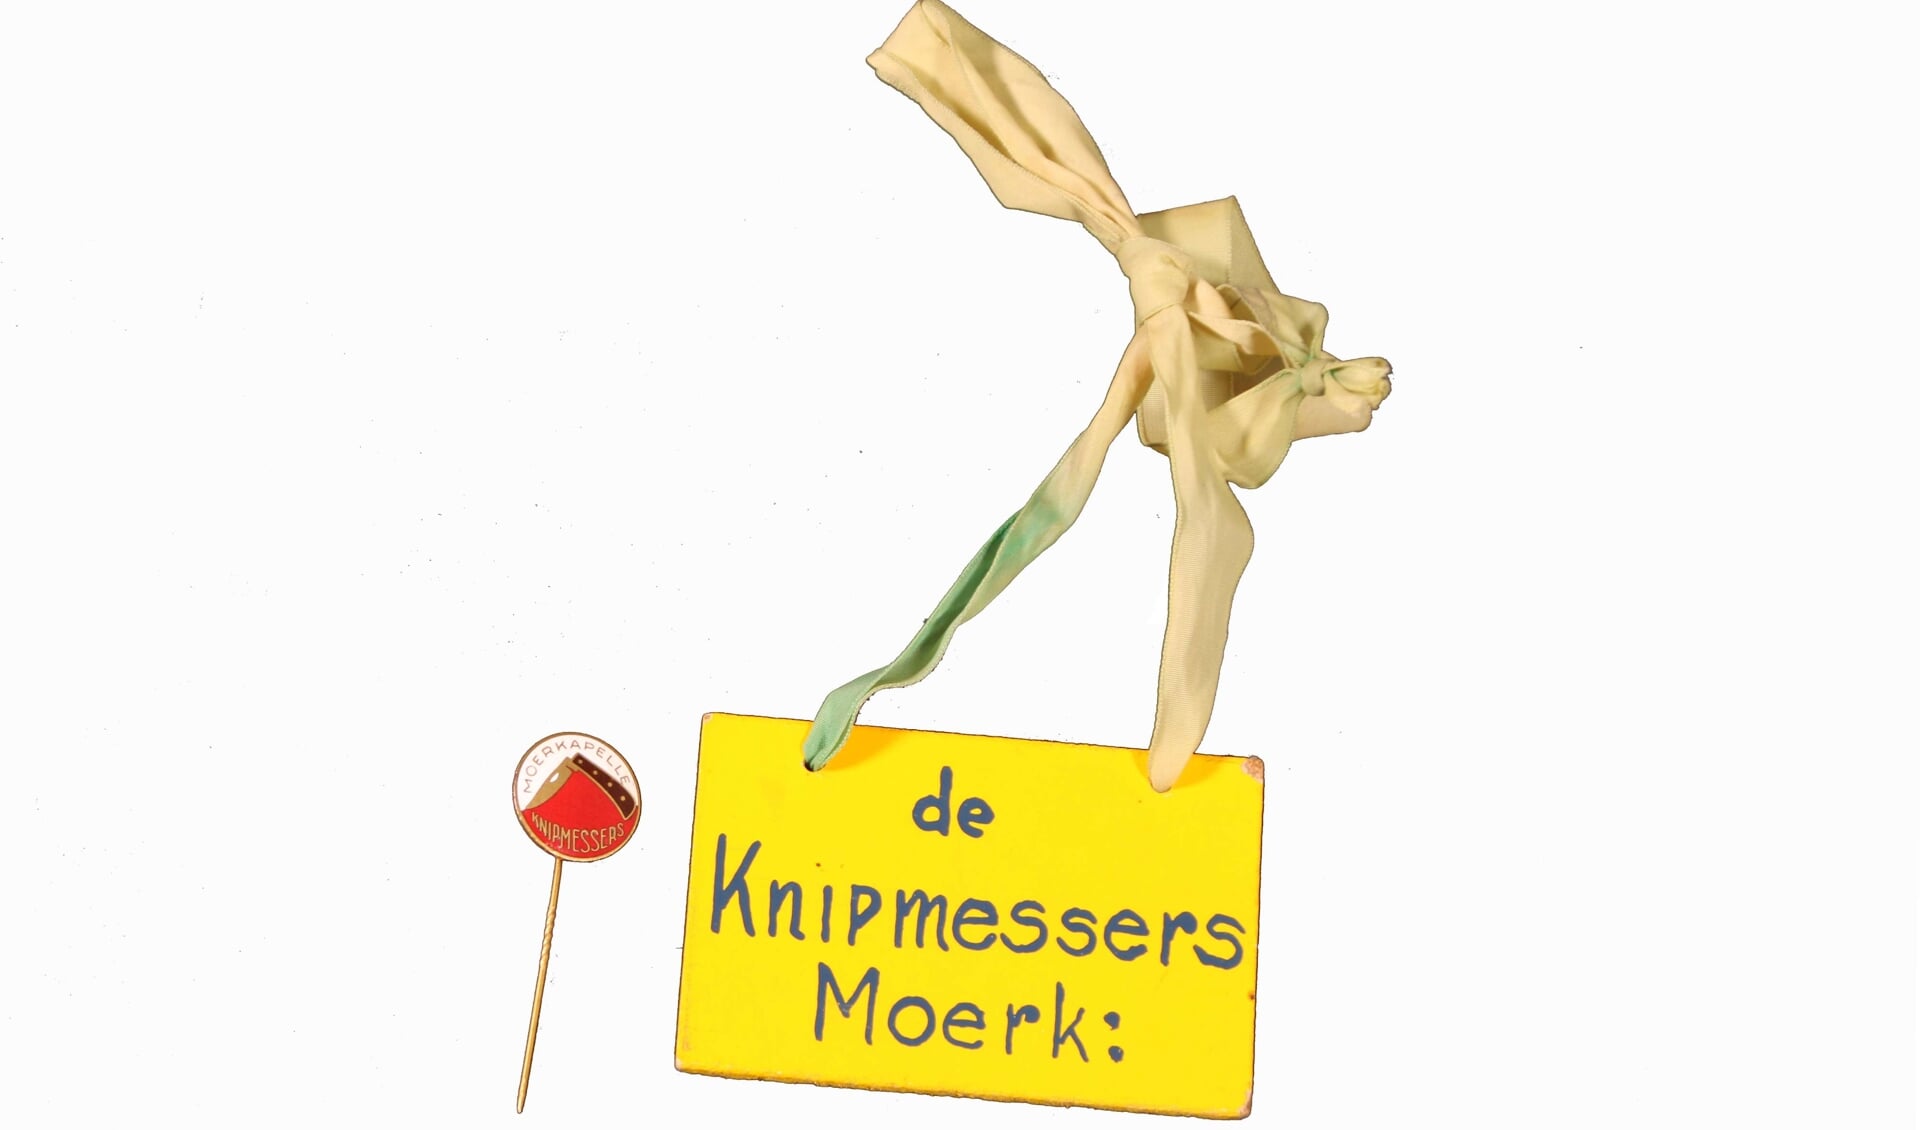 Een speldje en een naamkaartje van de Moerkapelse carnavalsvereniging ‘de Knipmessers’.